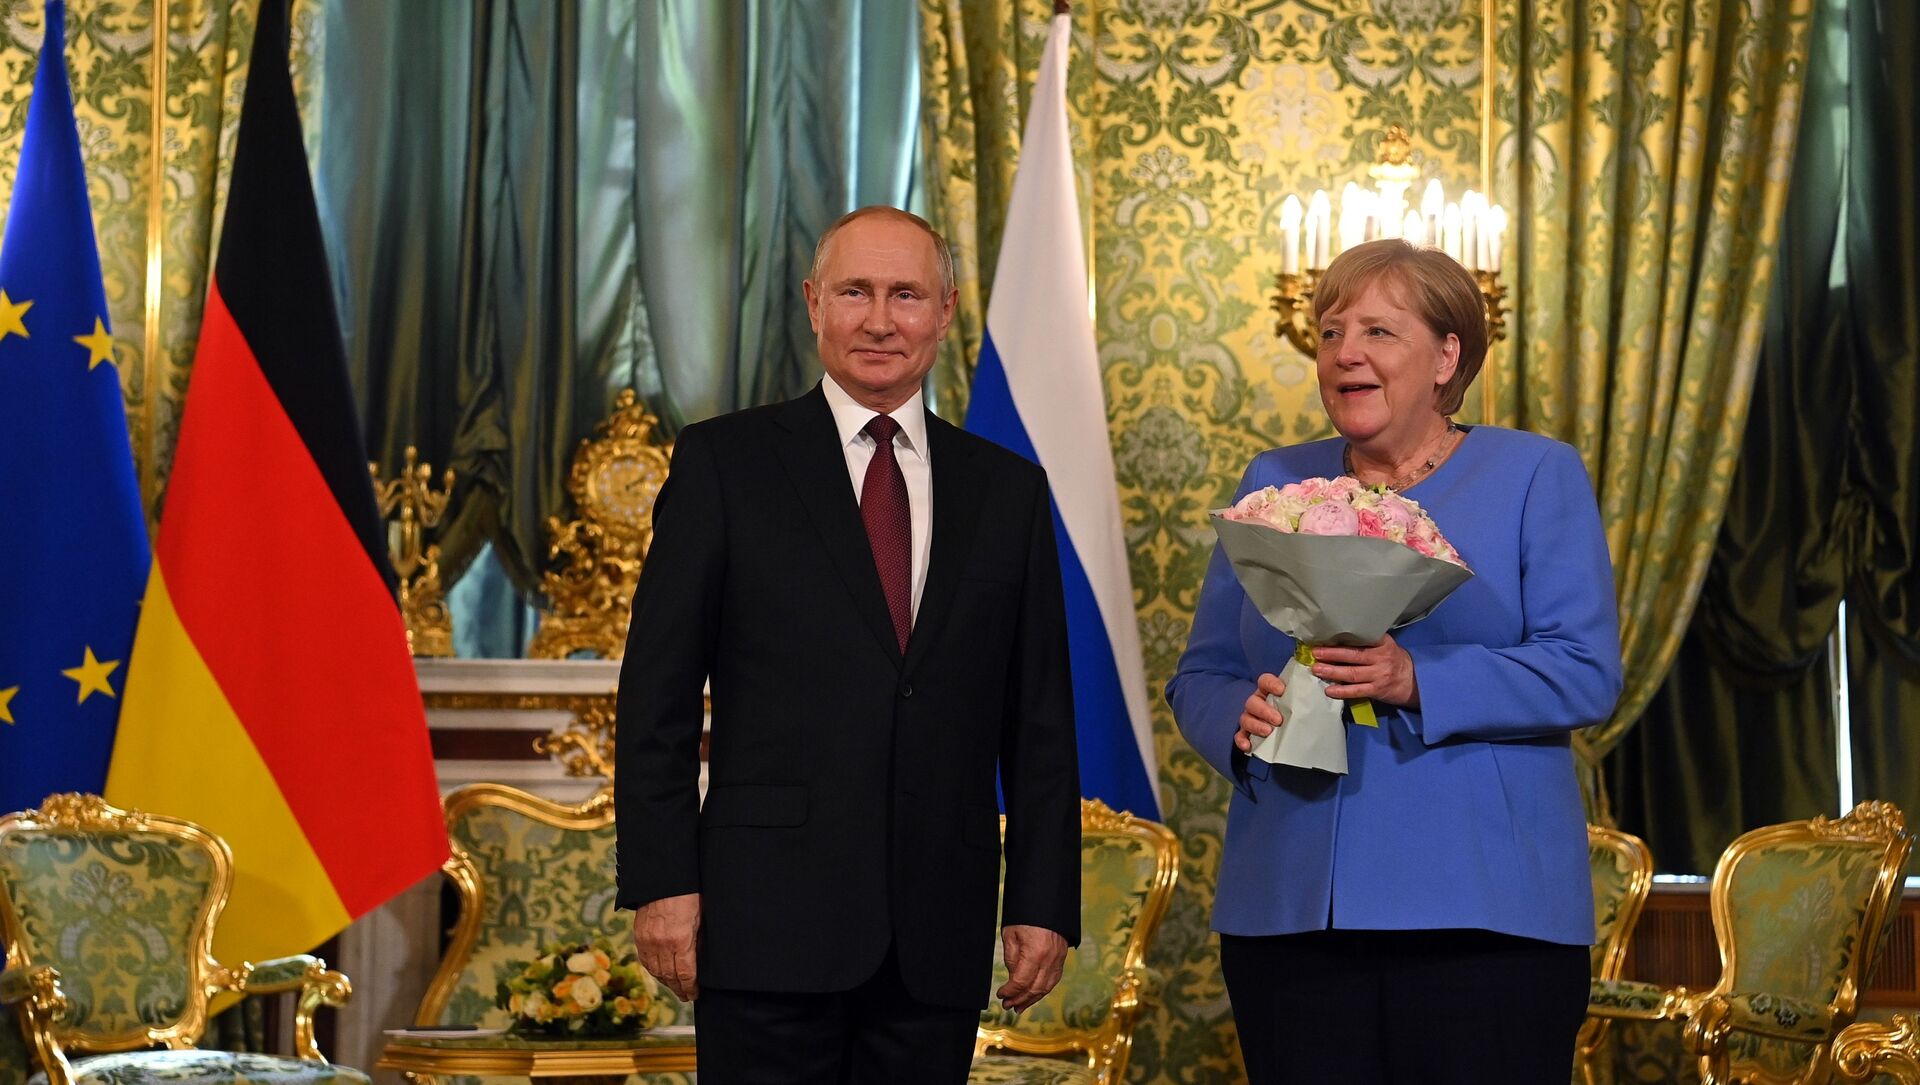  Vladimir Putin və Angela Merkel, arxiv şəkli - Sputnik Грузия, 1920, 20.08.2021